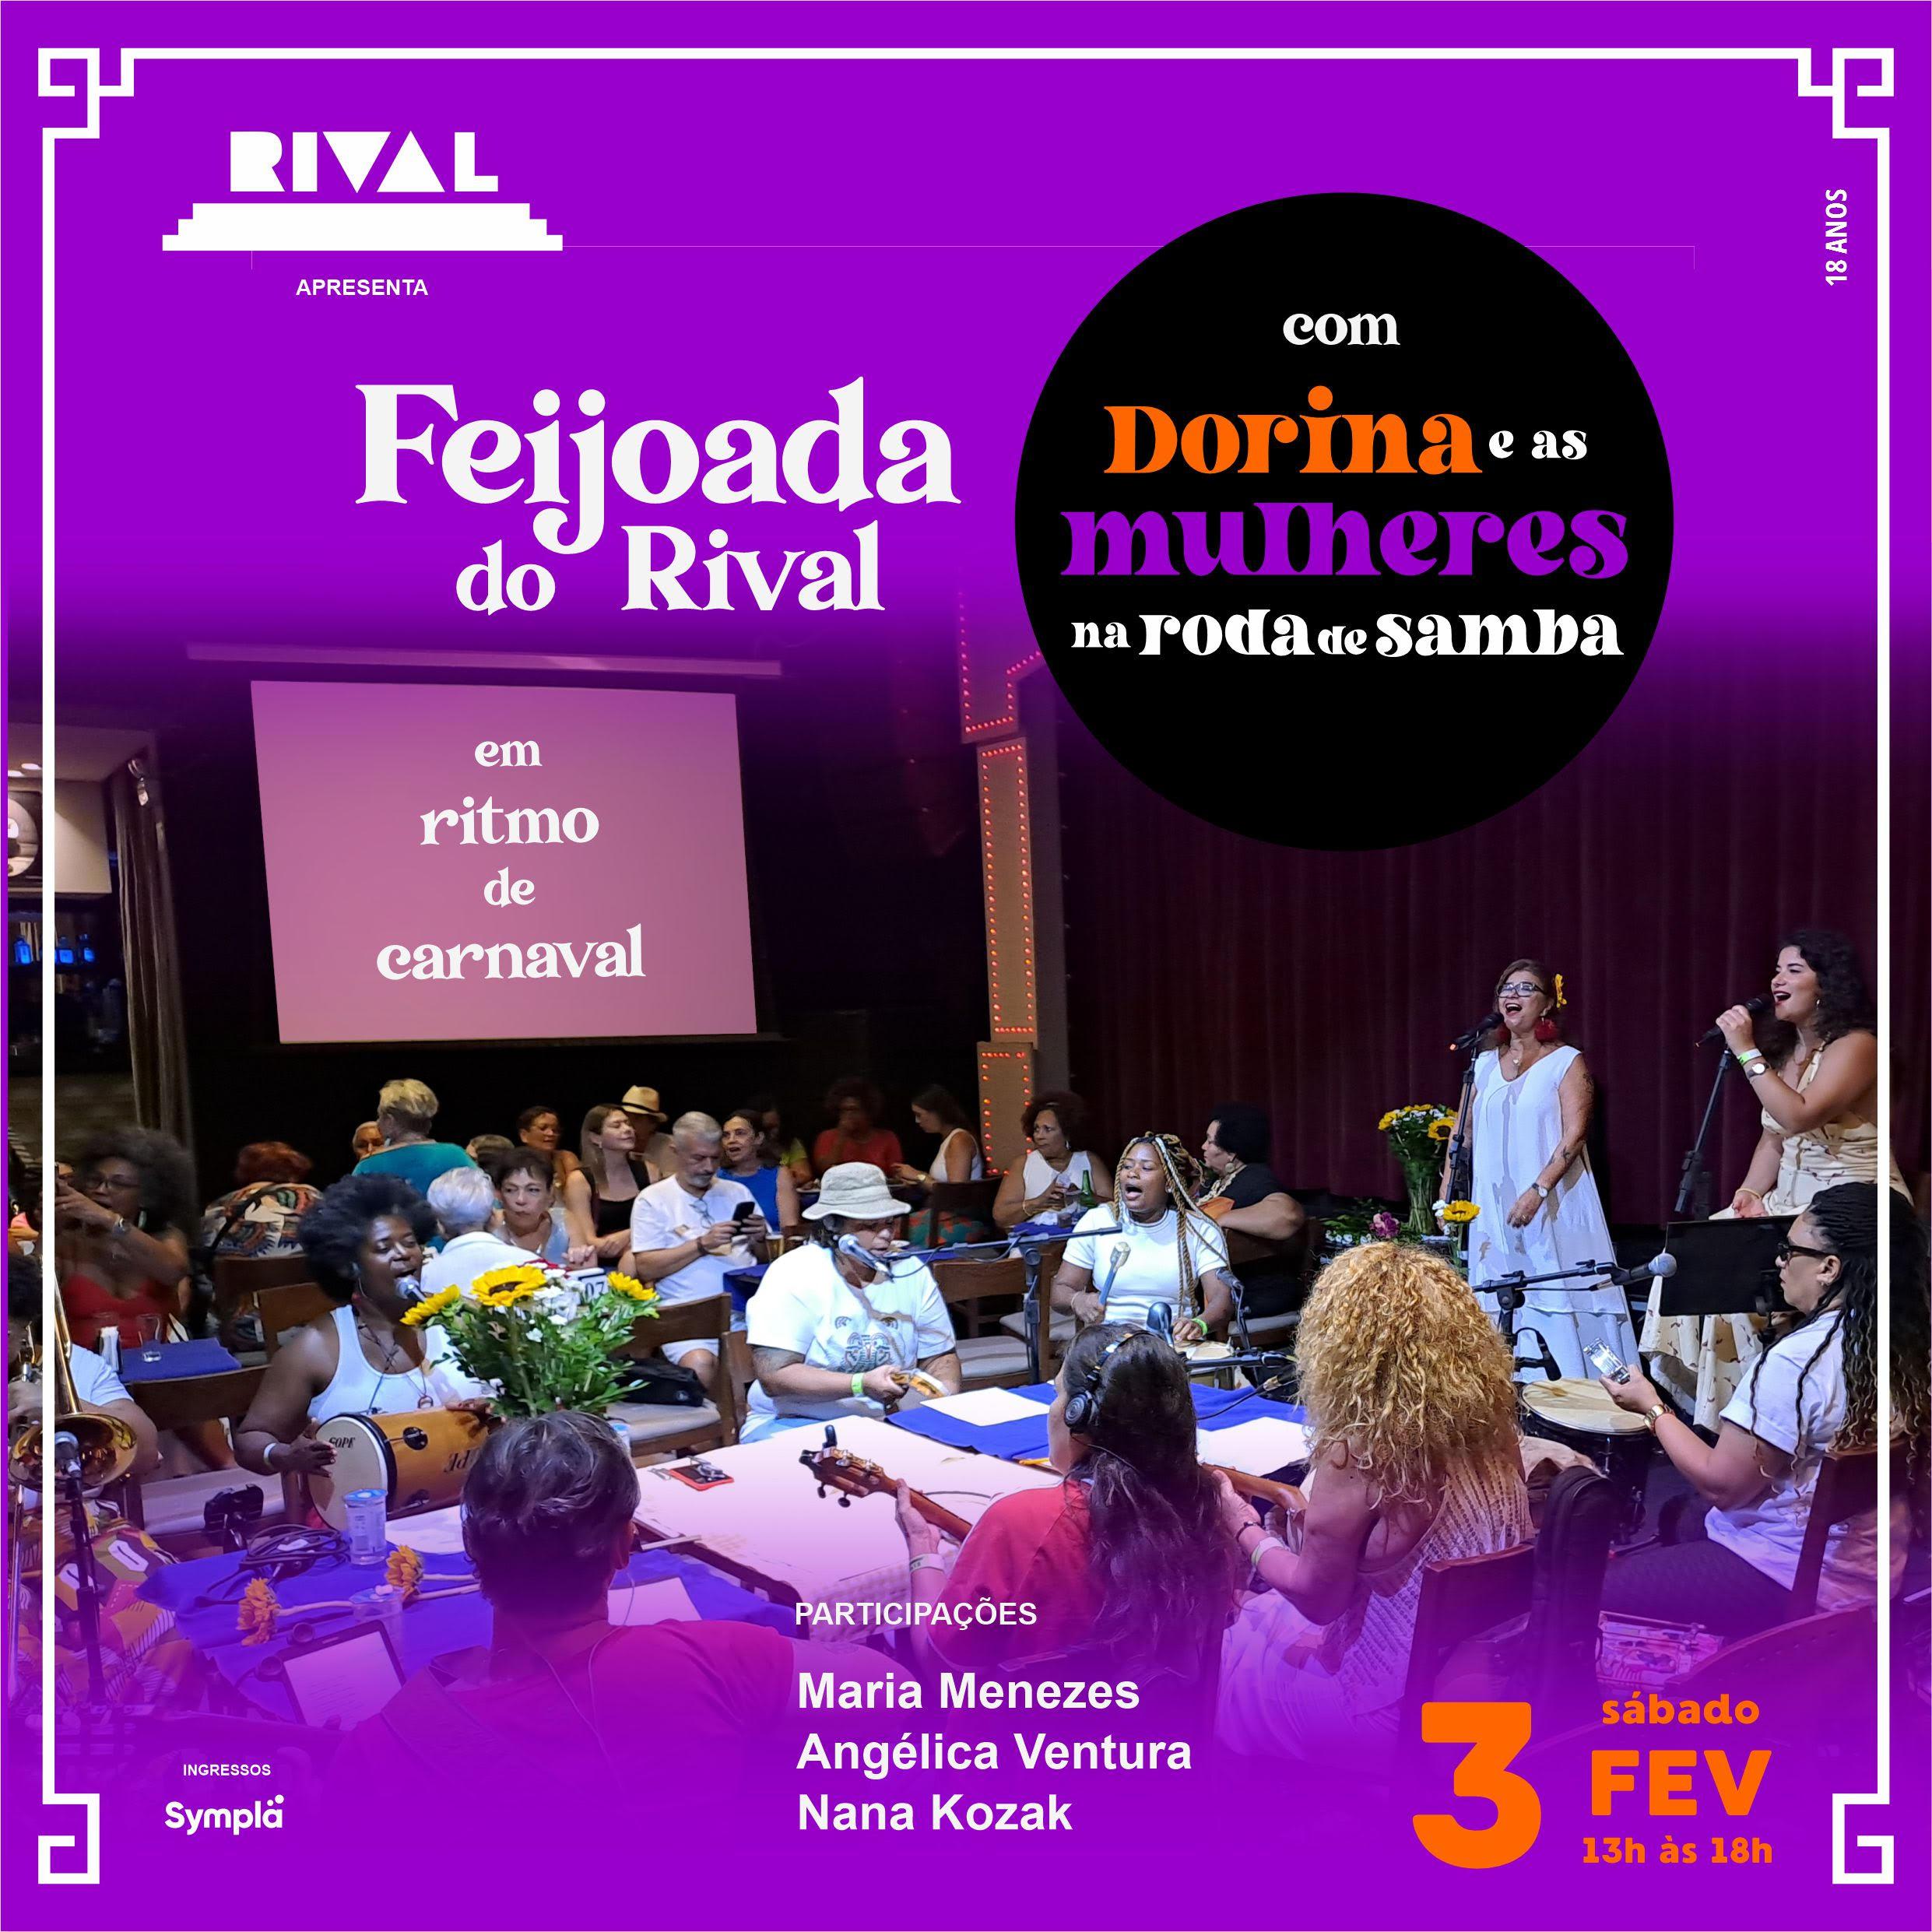 Feijoada do Rival esquenta o Carnaval com Dorina, Mulheres na Roda de Samba e participações especiais